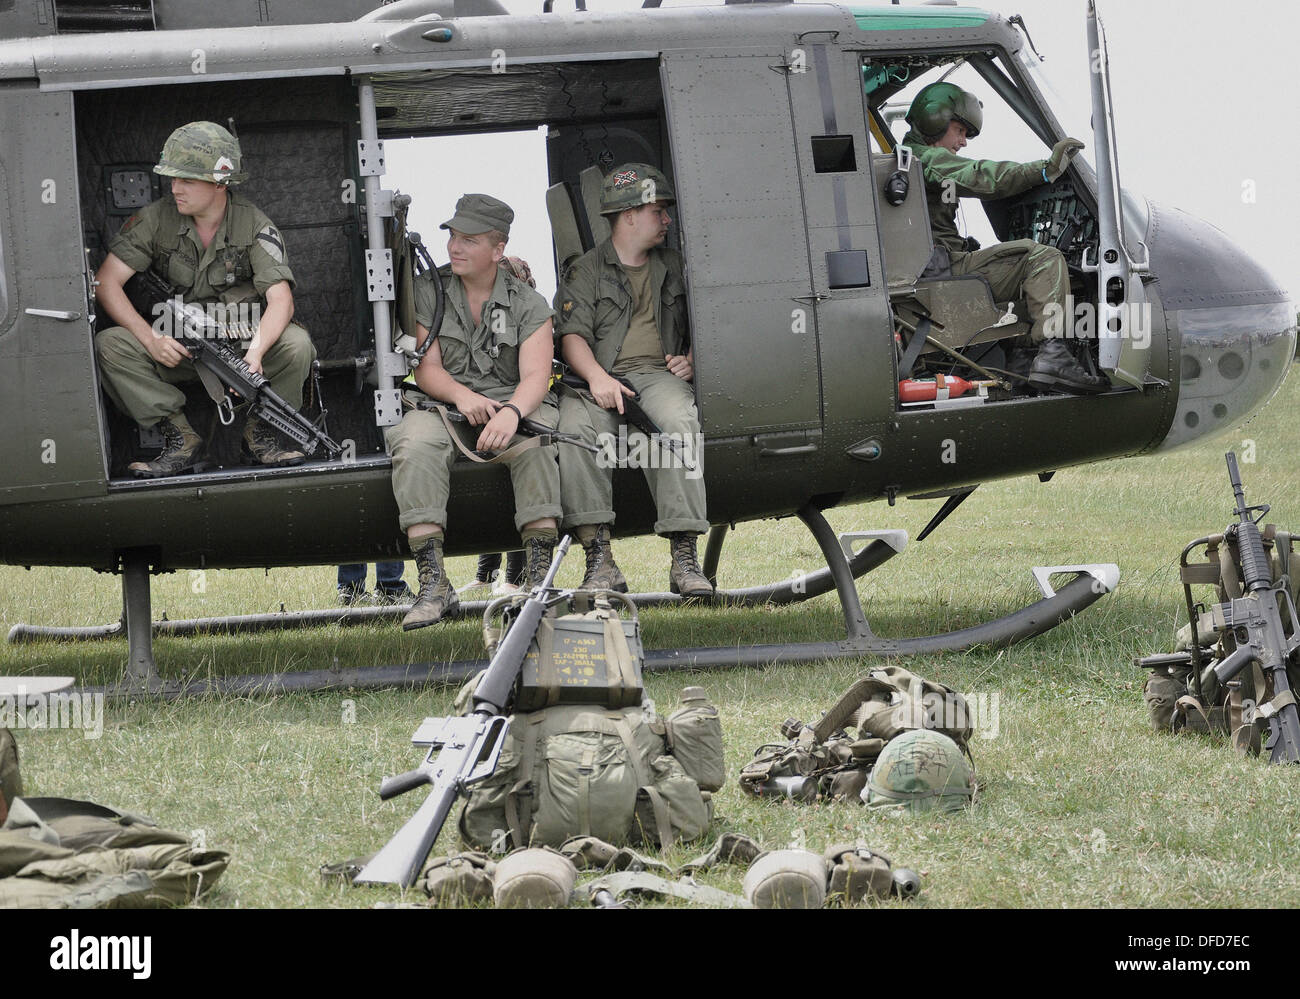 Bell UH-1 "Huey' US Army elicottero con re-enactors per rappresentare la guerra del Vietnam scenario. Immagine "invecchiato" digitalmente per anni settanta era colore sbiadito. Foto Stock